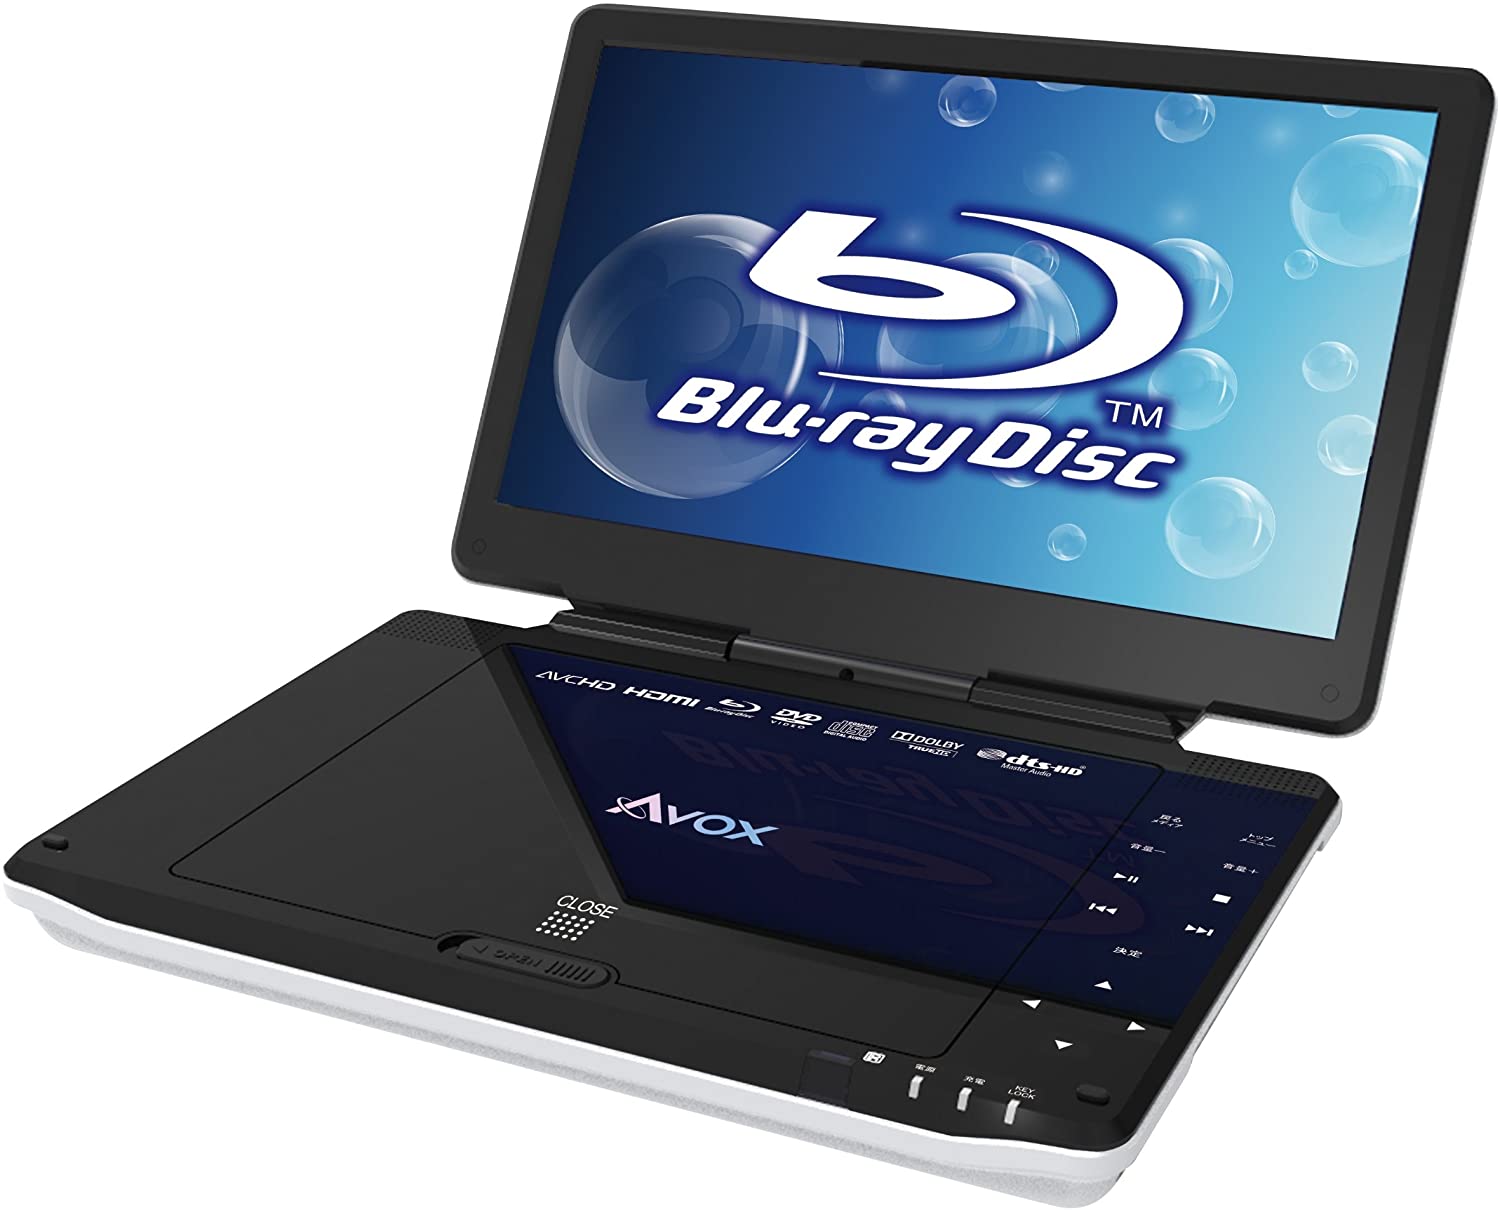 再生専用 Blu-ray DVD ブルーレイディスクプレーヤー 対応 プレーヤー HDMI 高音質 ブルーレイプレーヤー リモコン付き USB